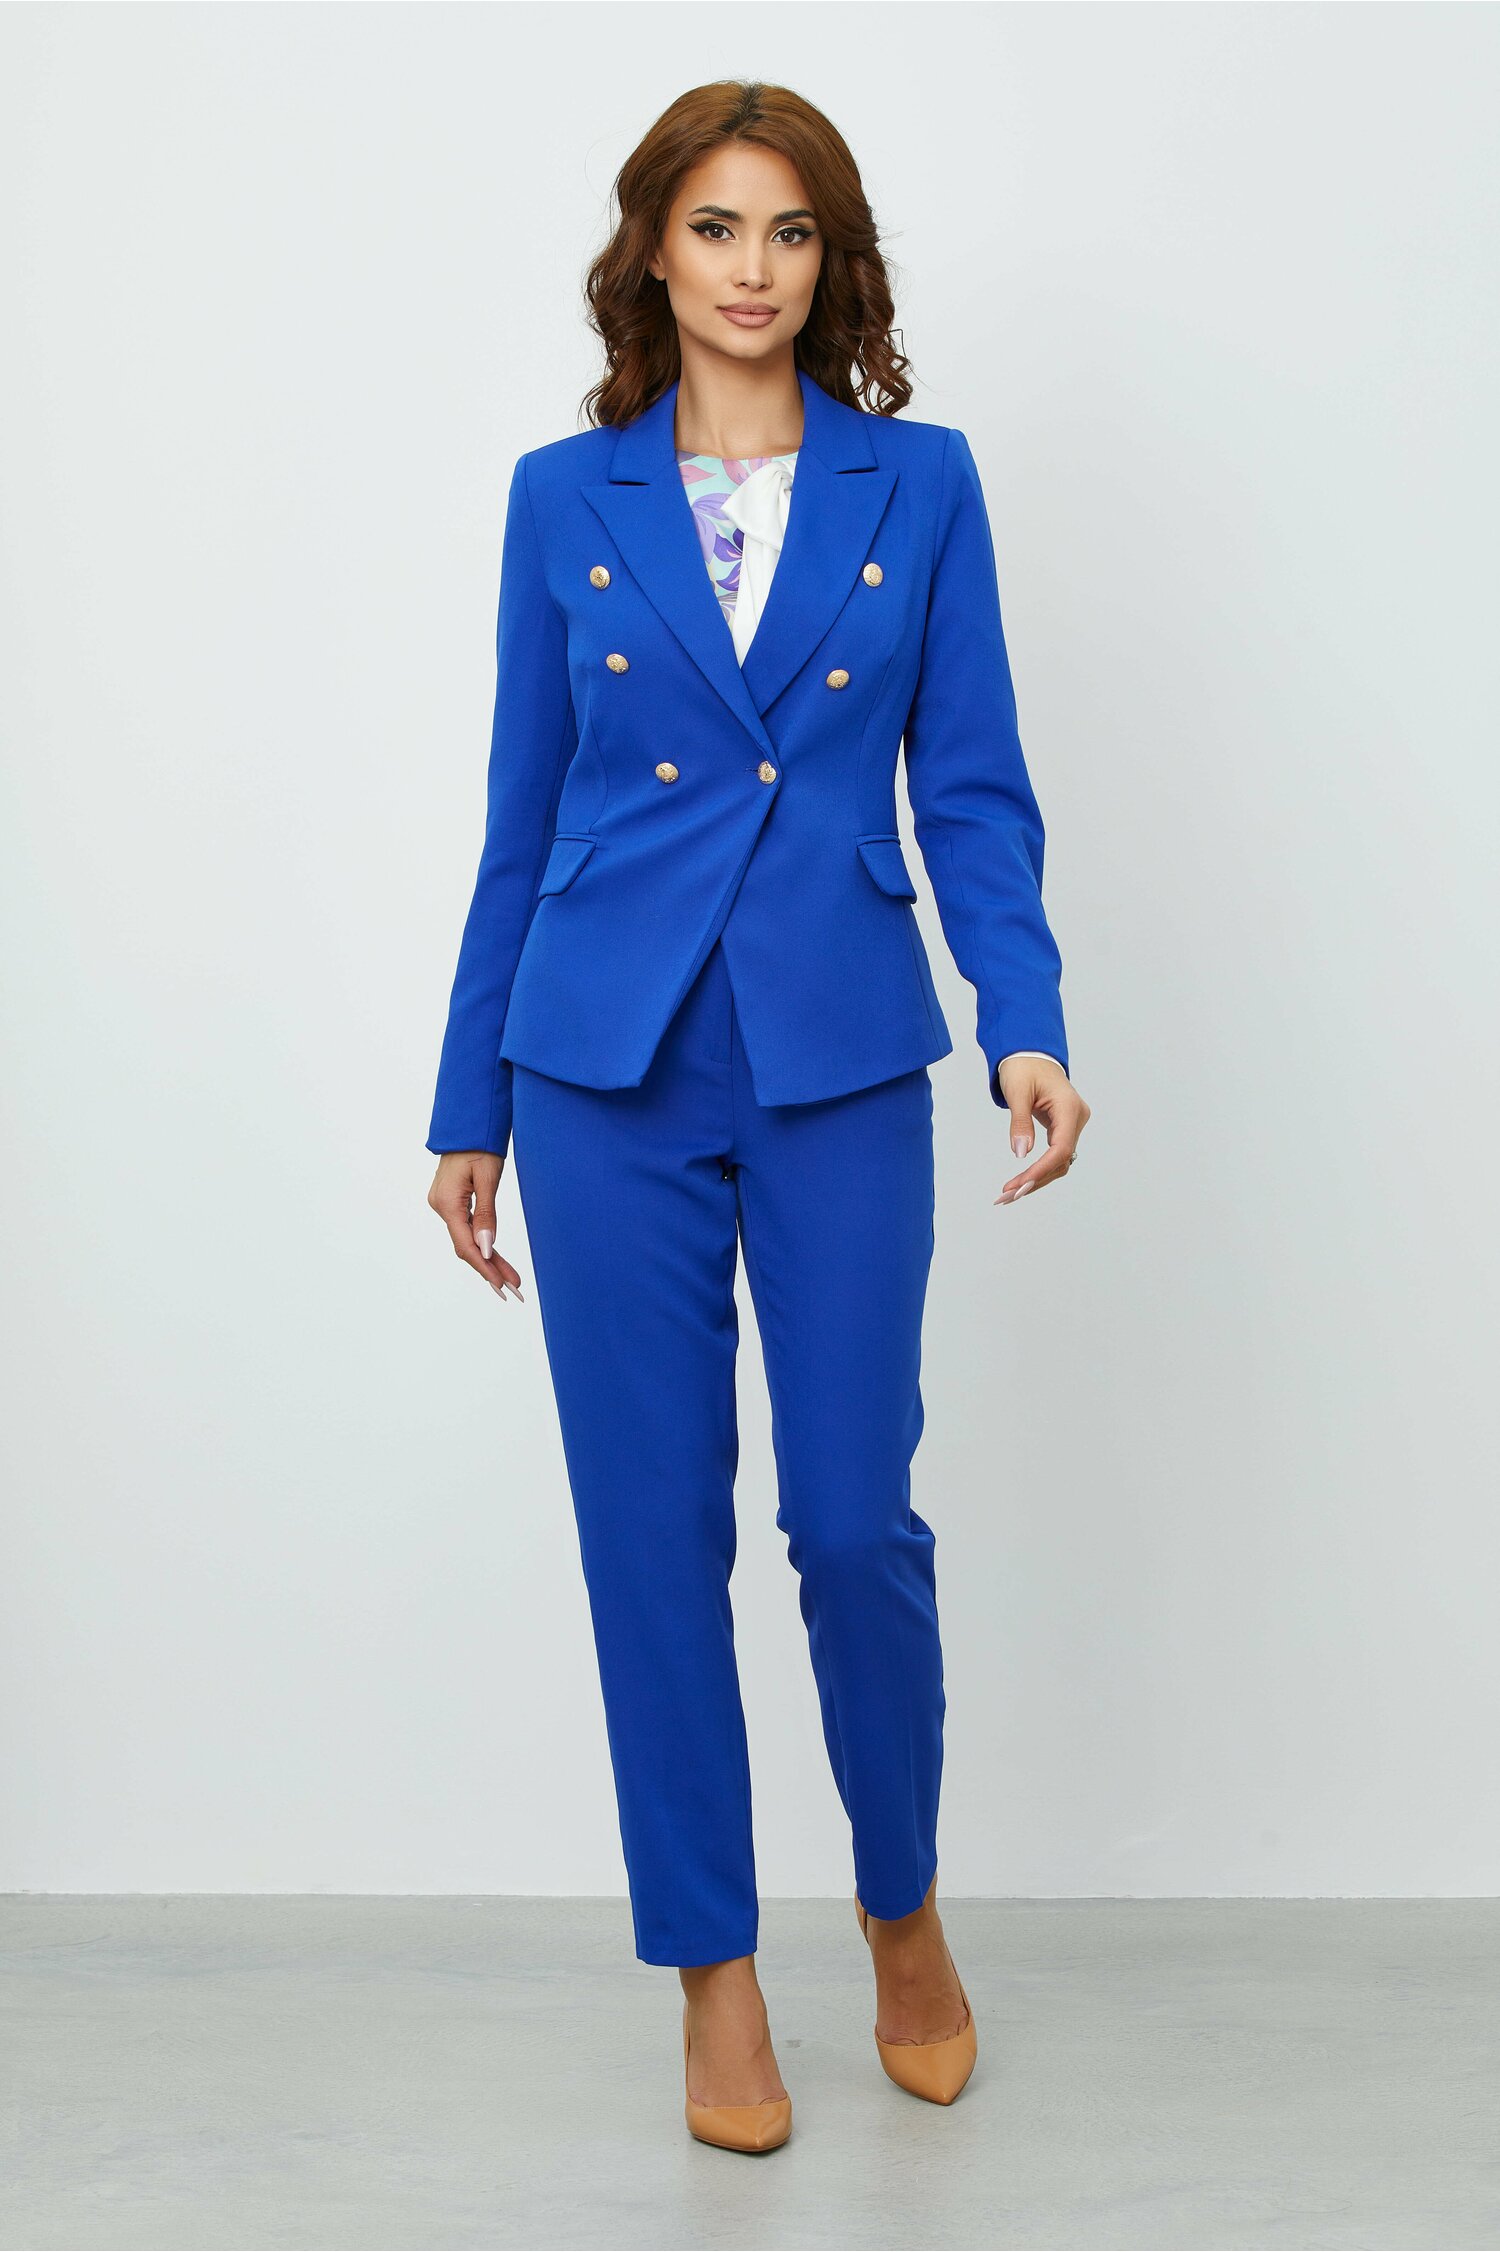 Compleu Sonia albastru cu sacou si pantaloni 2022 ❤️ Pret Super dyfashion imagine noua 2022